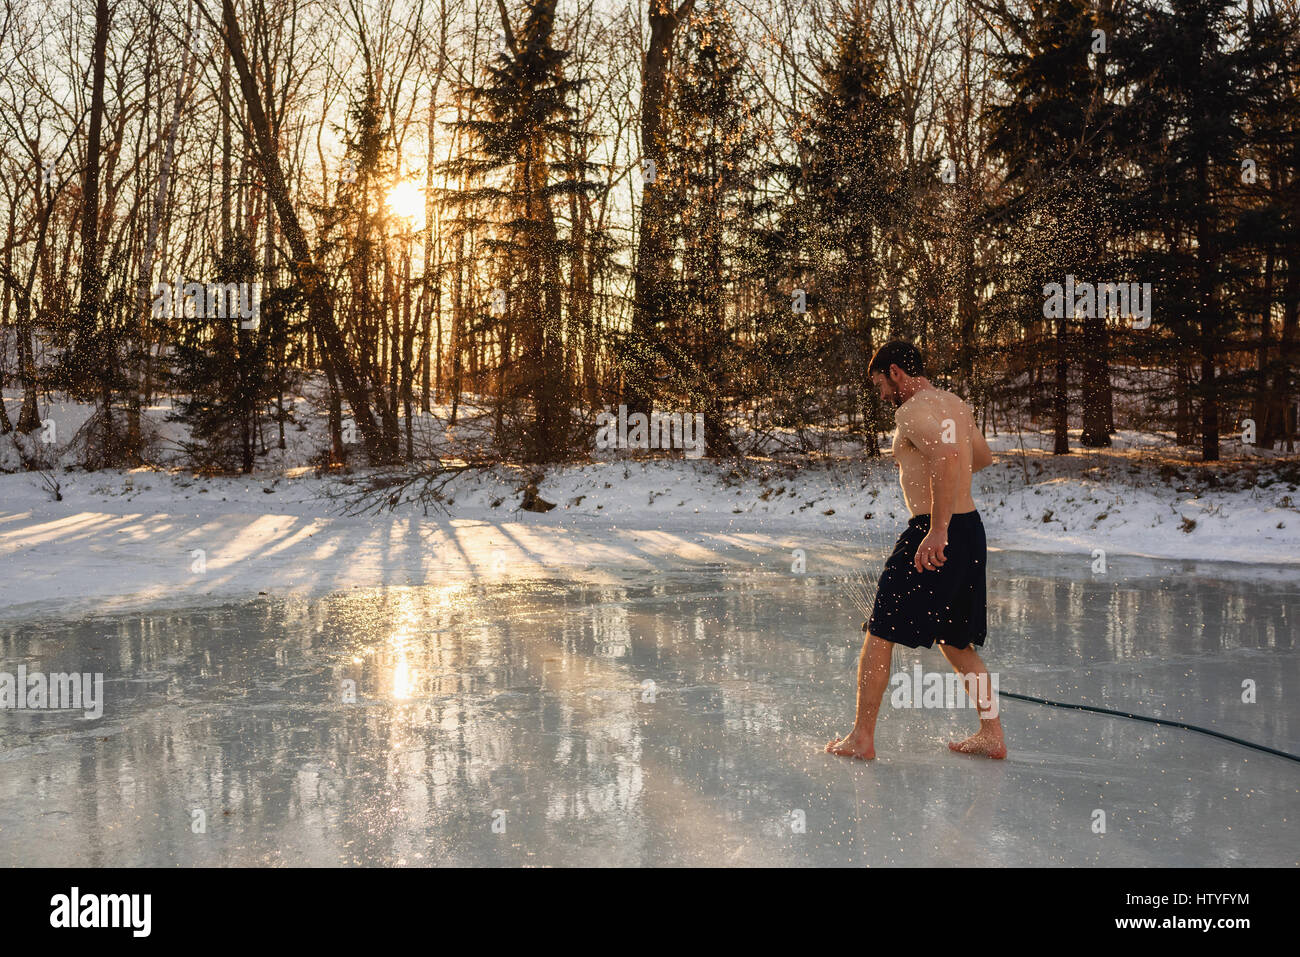 Uomo in costume da bagno in esecuzione attraverso impianti sprinkler sul lago ghiacciato Foto Stock